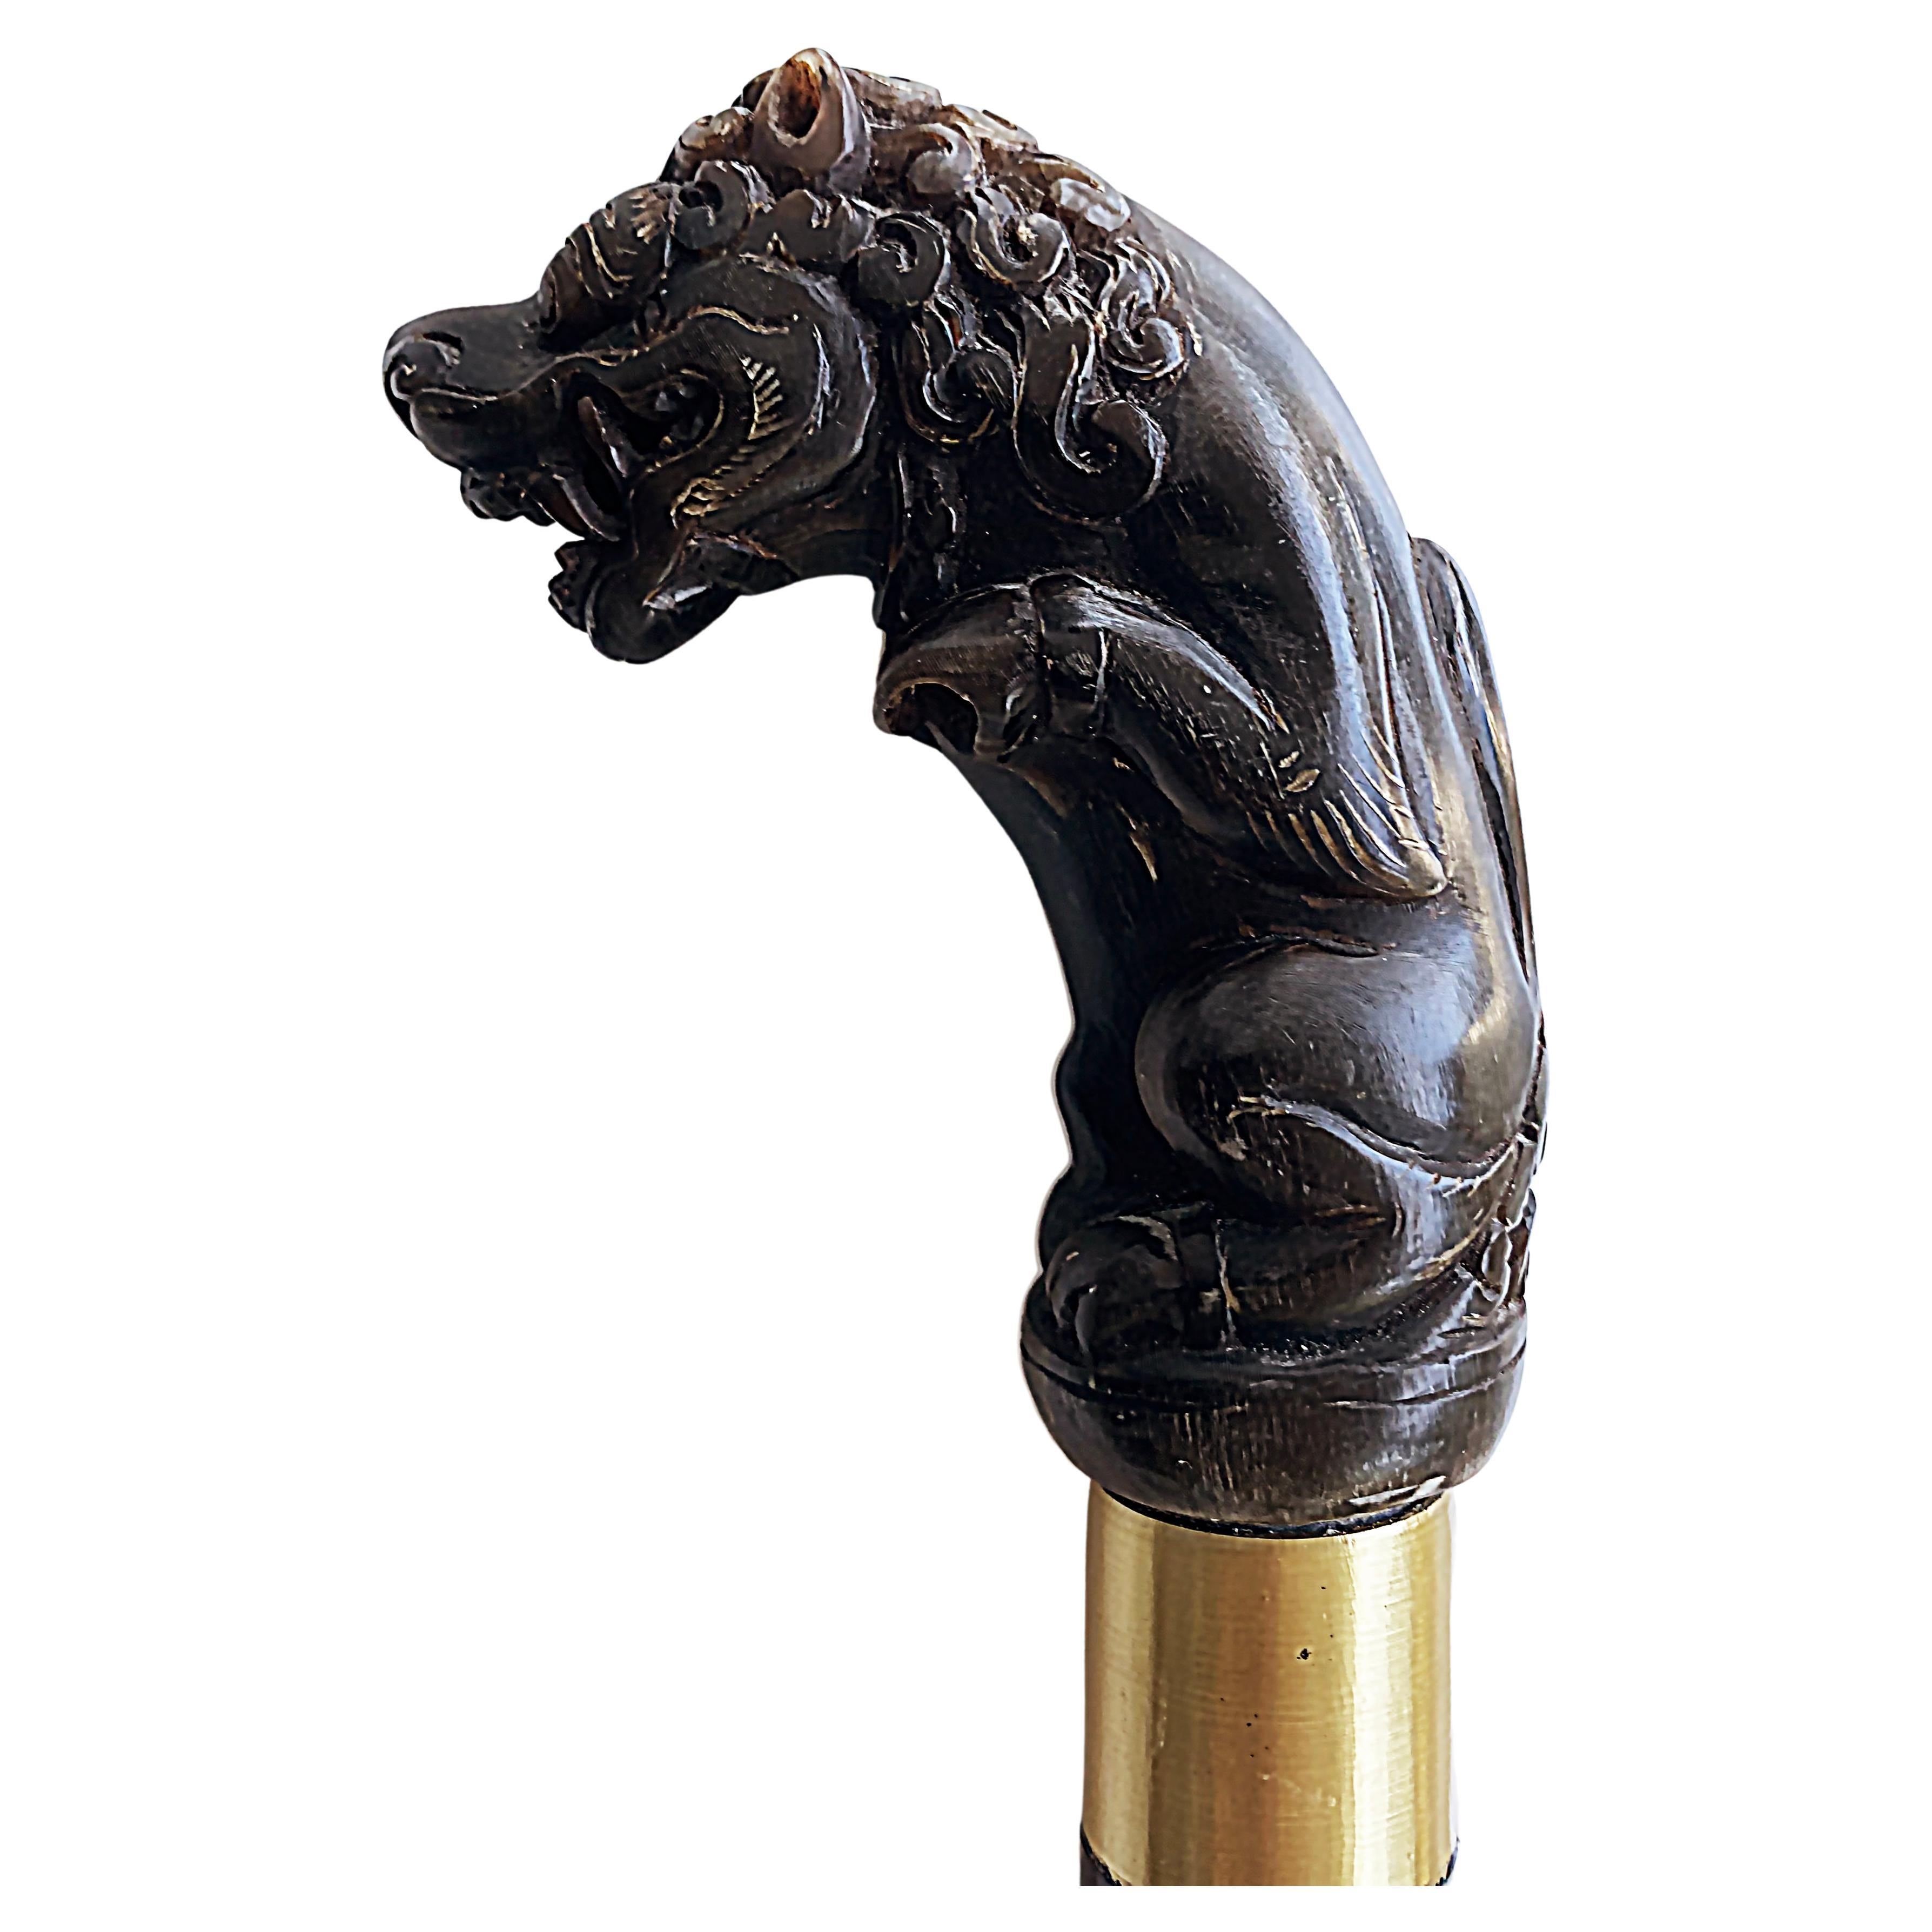 Bâton de marche pour chien en corne sculptée avec bandes de métal, datant du début des années 1900